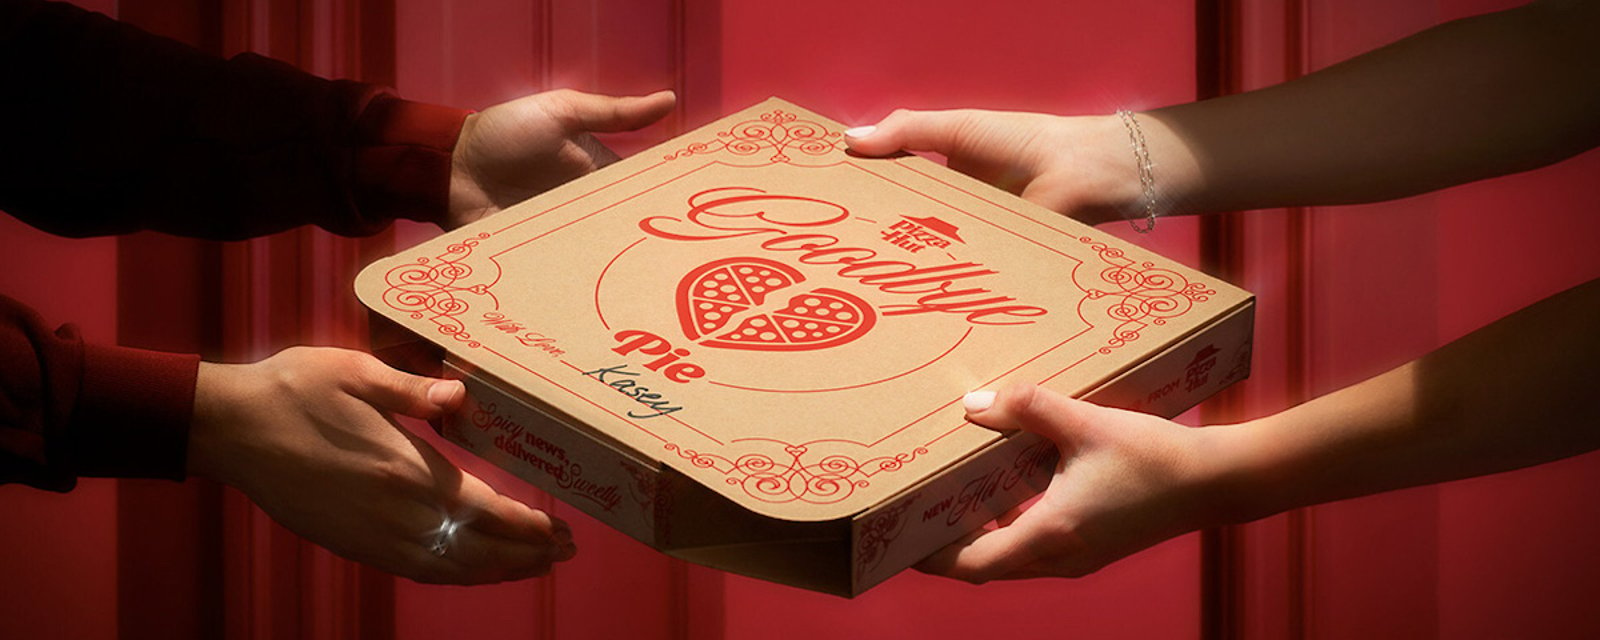 Pour la Saint-Valentin, Pizza Hut lance des pizzas… de rupture!